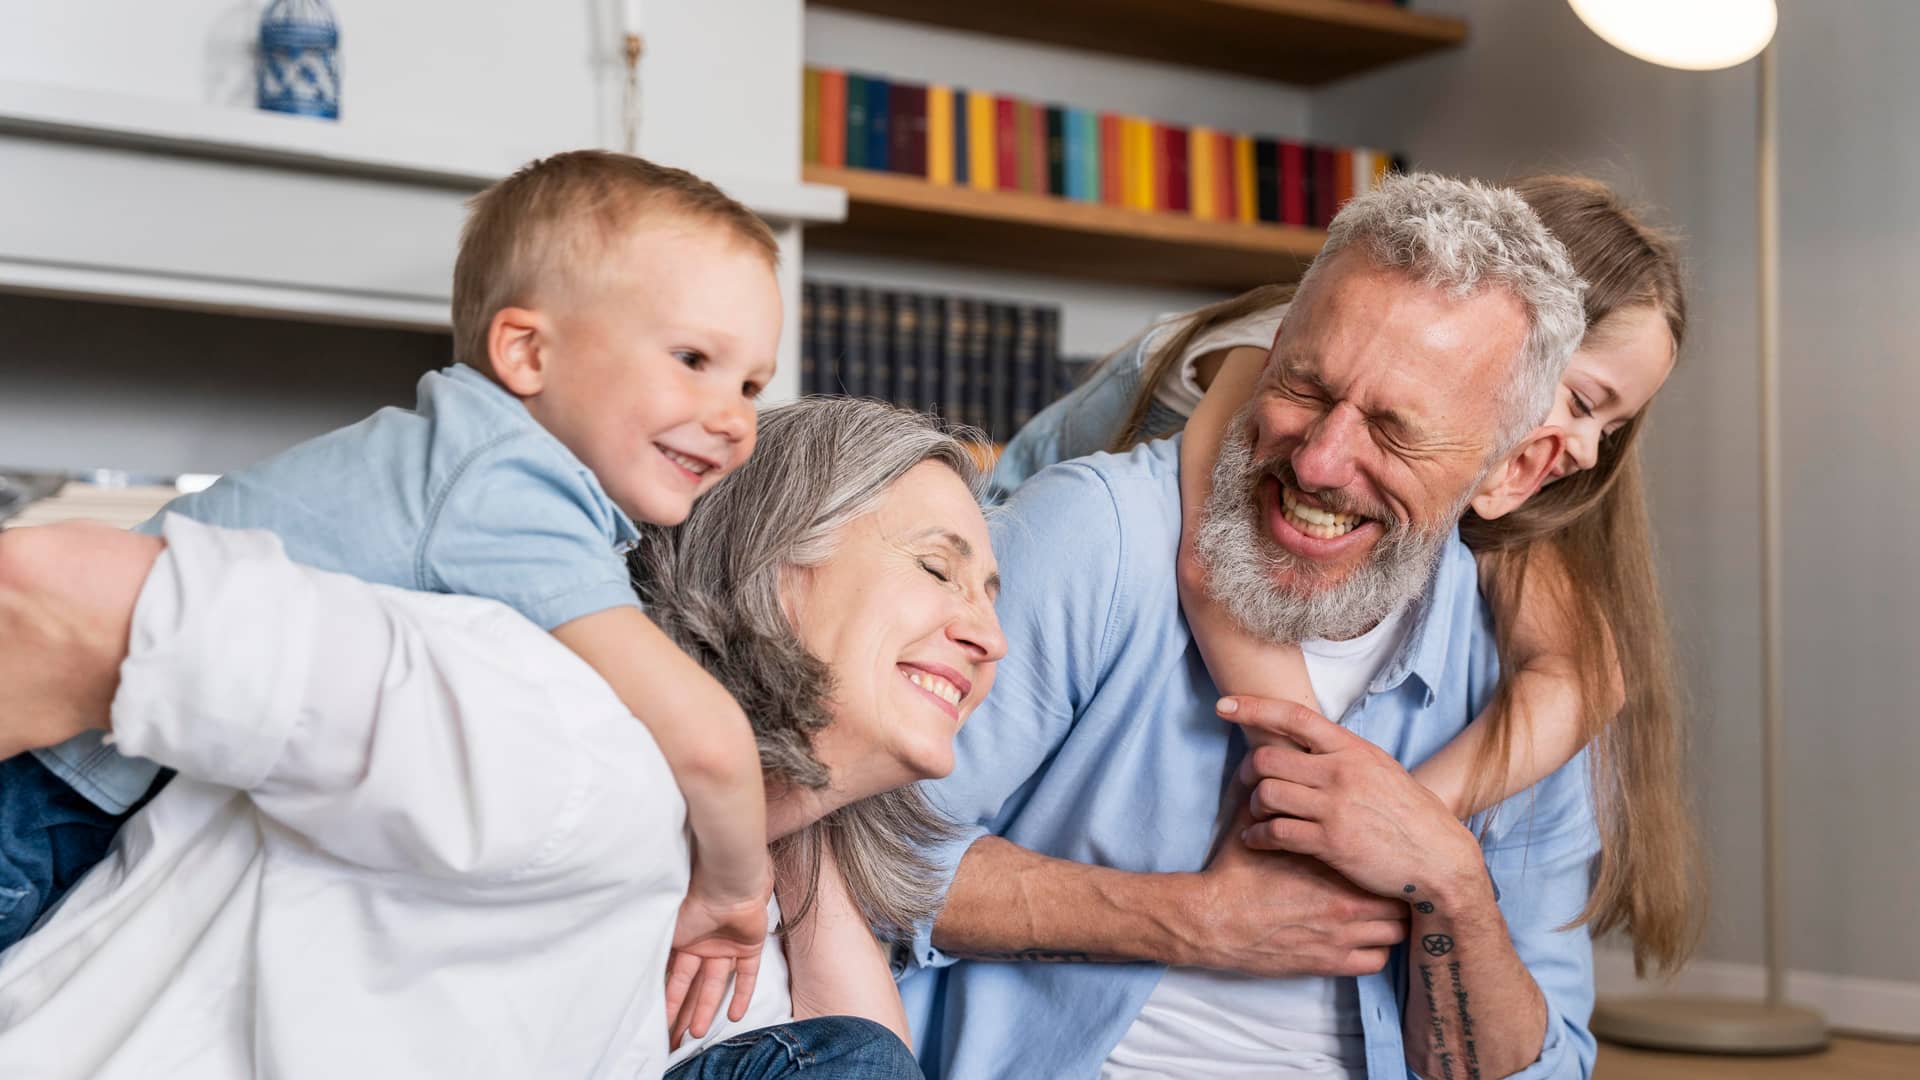 Matrimonio disfruta de su jubilación jugando con sus nietos gracias a su plan de pensiones garantizado